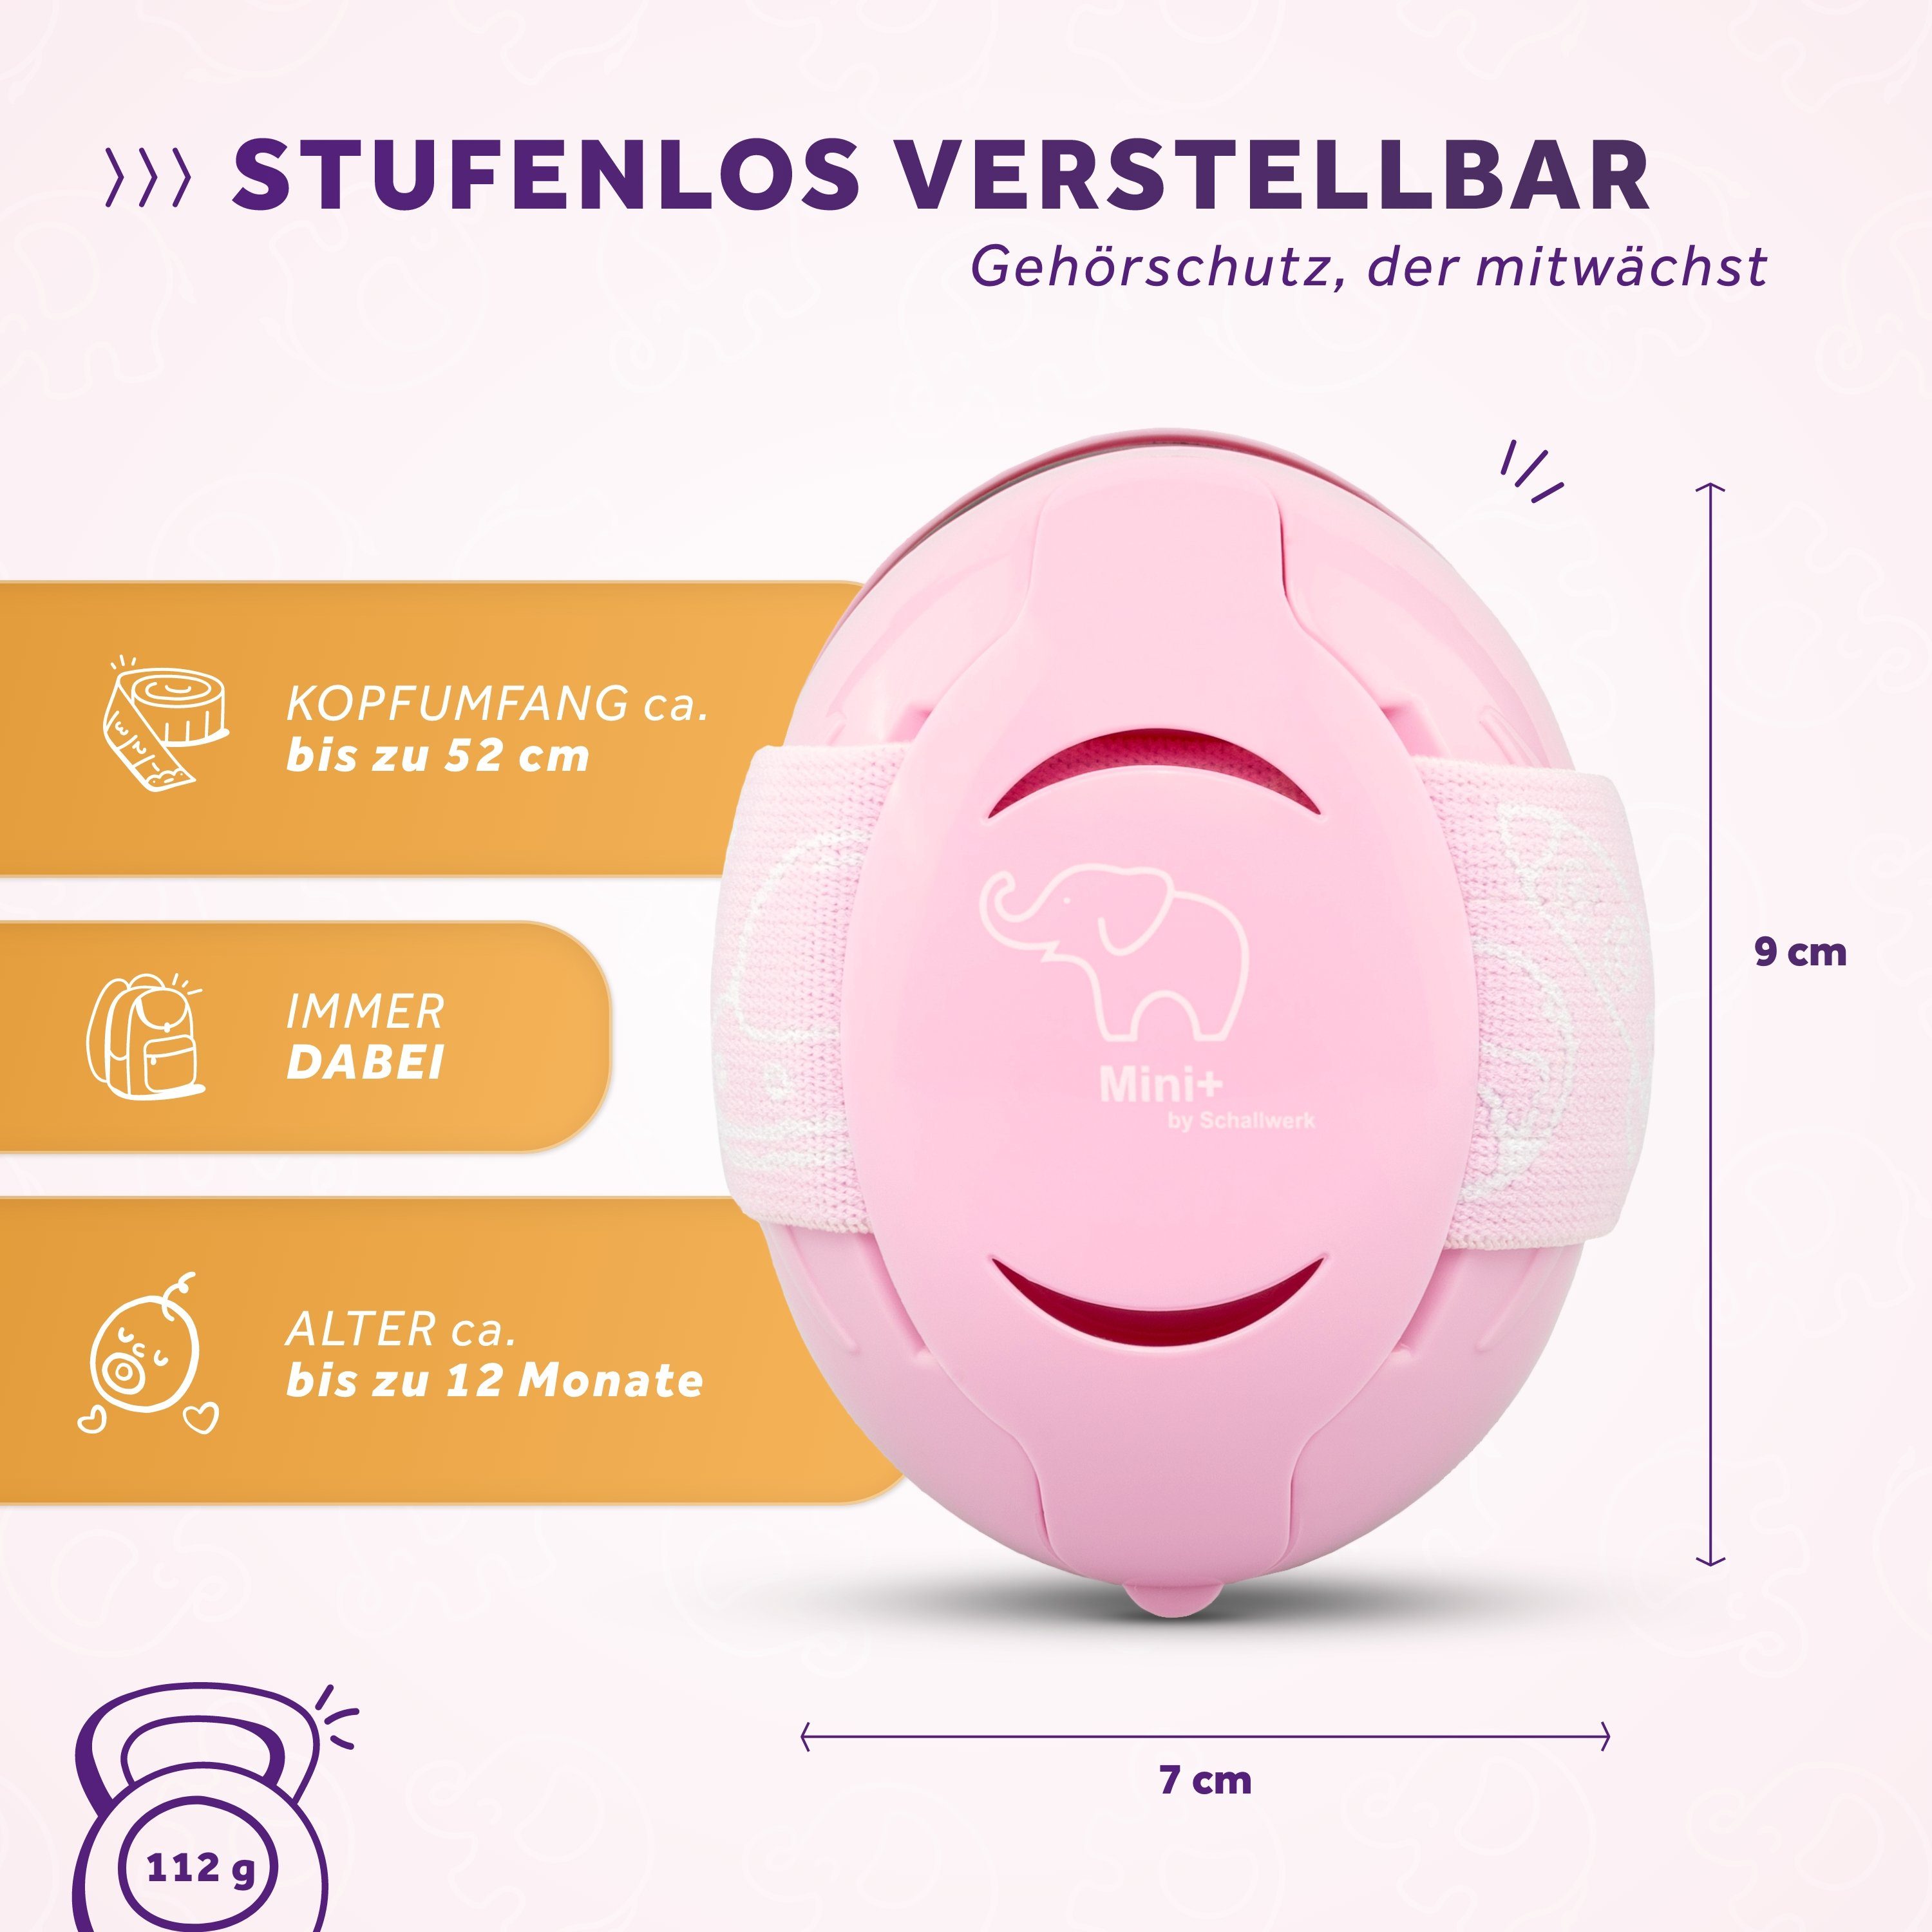 Schallwerk Kapselgehörschutz Schallwerk® Mini+ Gehörschutz Kapselgehörschutz Rosa für Kinder Kleinkind –